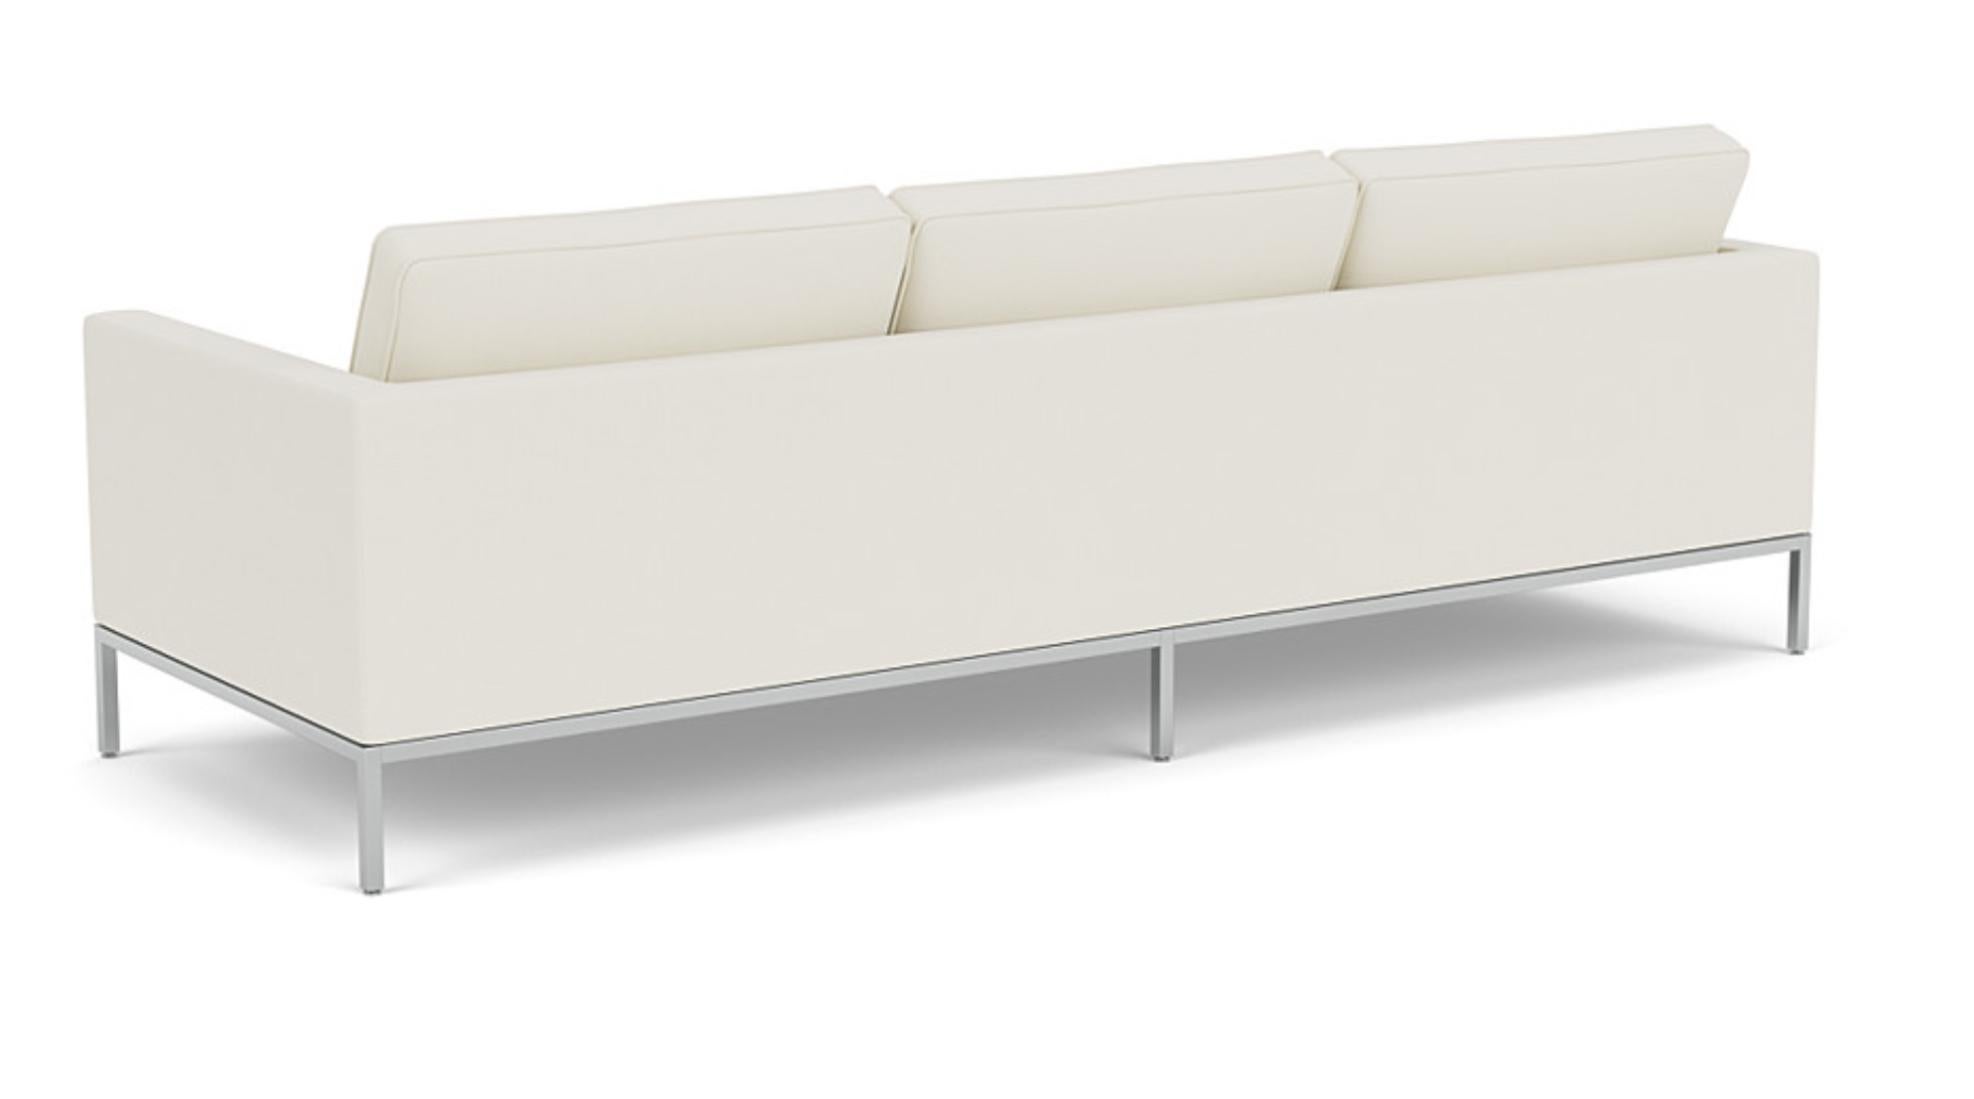 Florence Knoll for Knoll Original Tufted 3-Seat Sofa Cream White, USA 1954-2000s. Réchauffé par la couleur et la texture, le canapé Florence Knoll est une traduction à échelle réduite du rythme et des proportions de l'architecture moderne du milieu